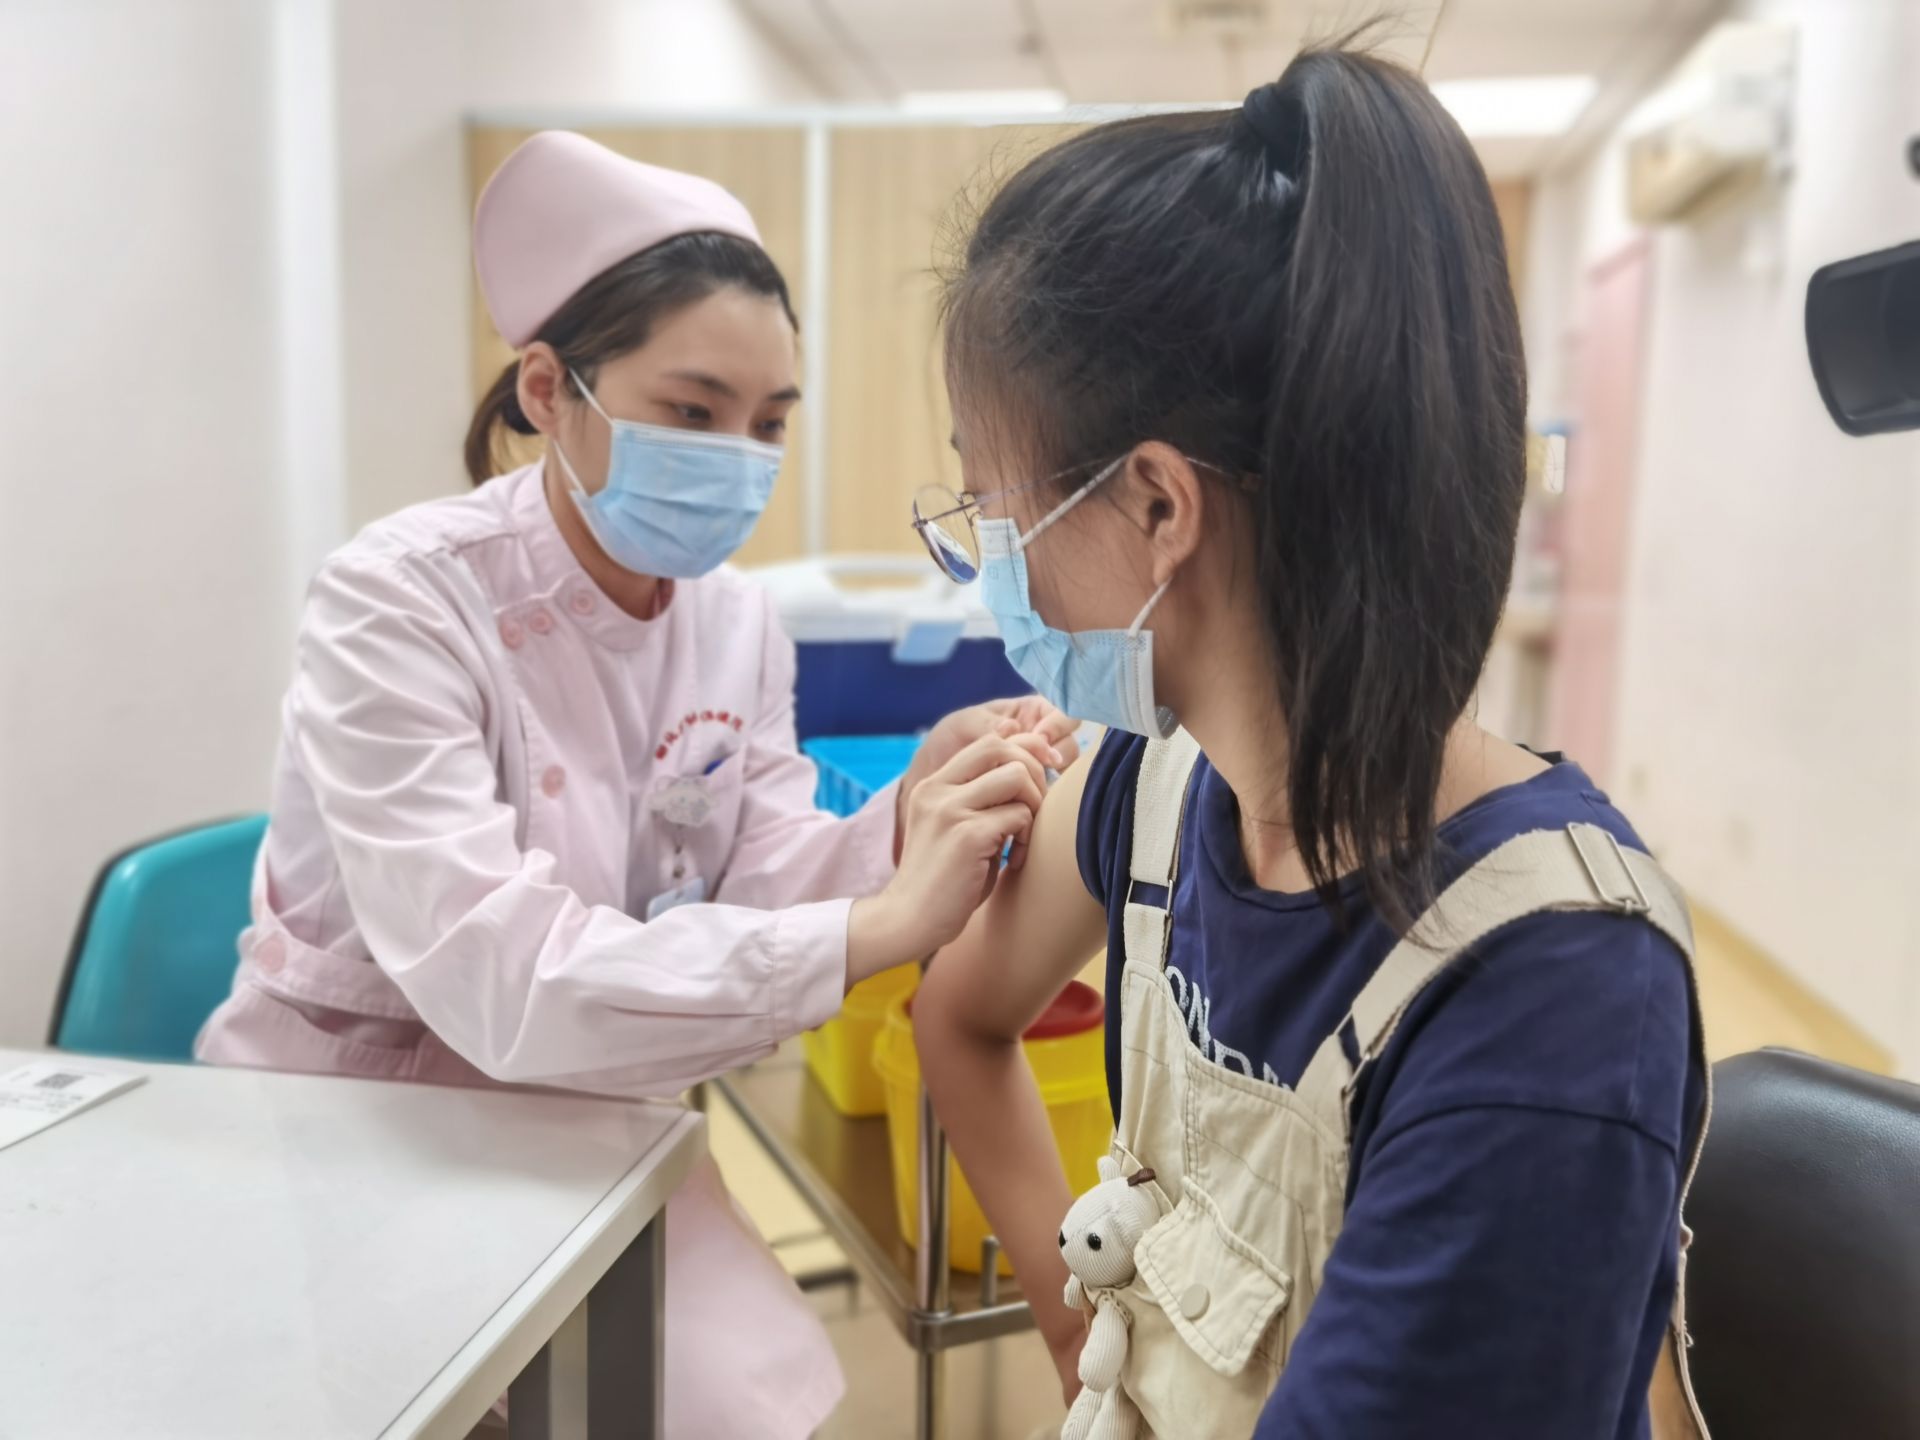 18岁的大学生薇薇从学校赶来预约这款国产二价hpv疫苗,在完善相关检查